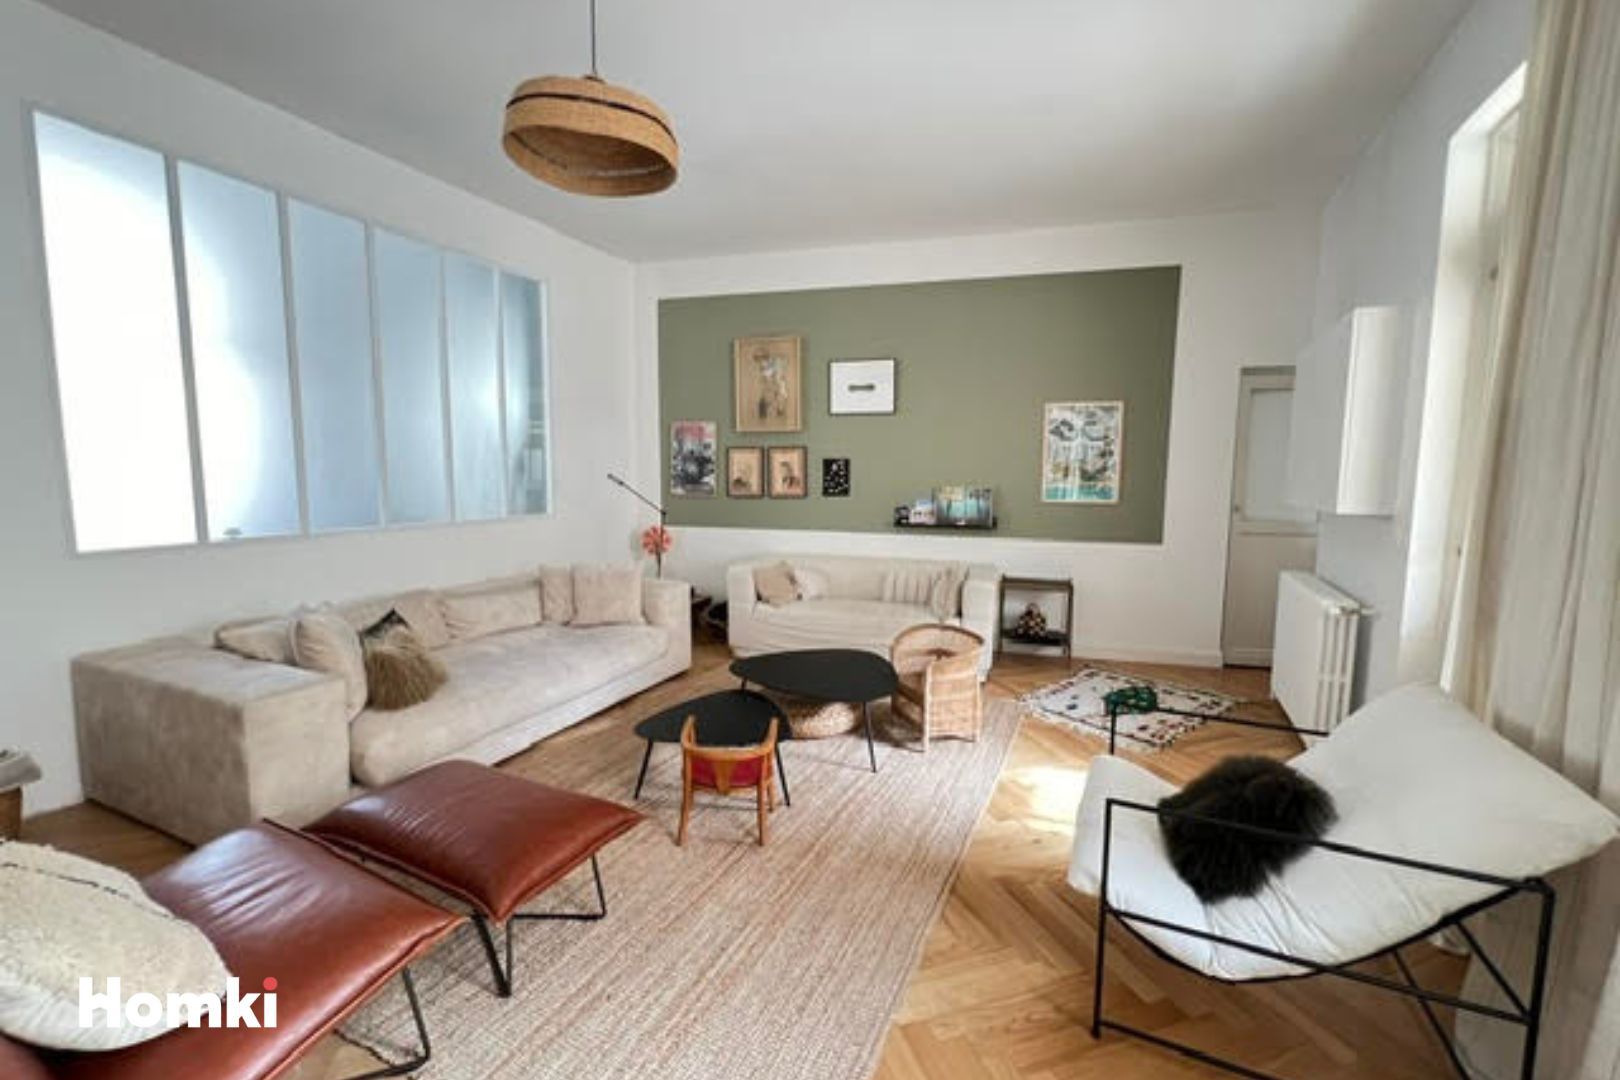 Homki - Vente Maison/villa  de 105.0 m² à Bordeaux 33800